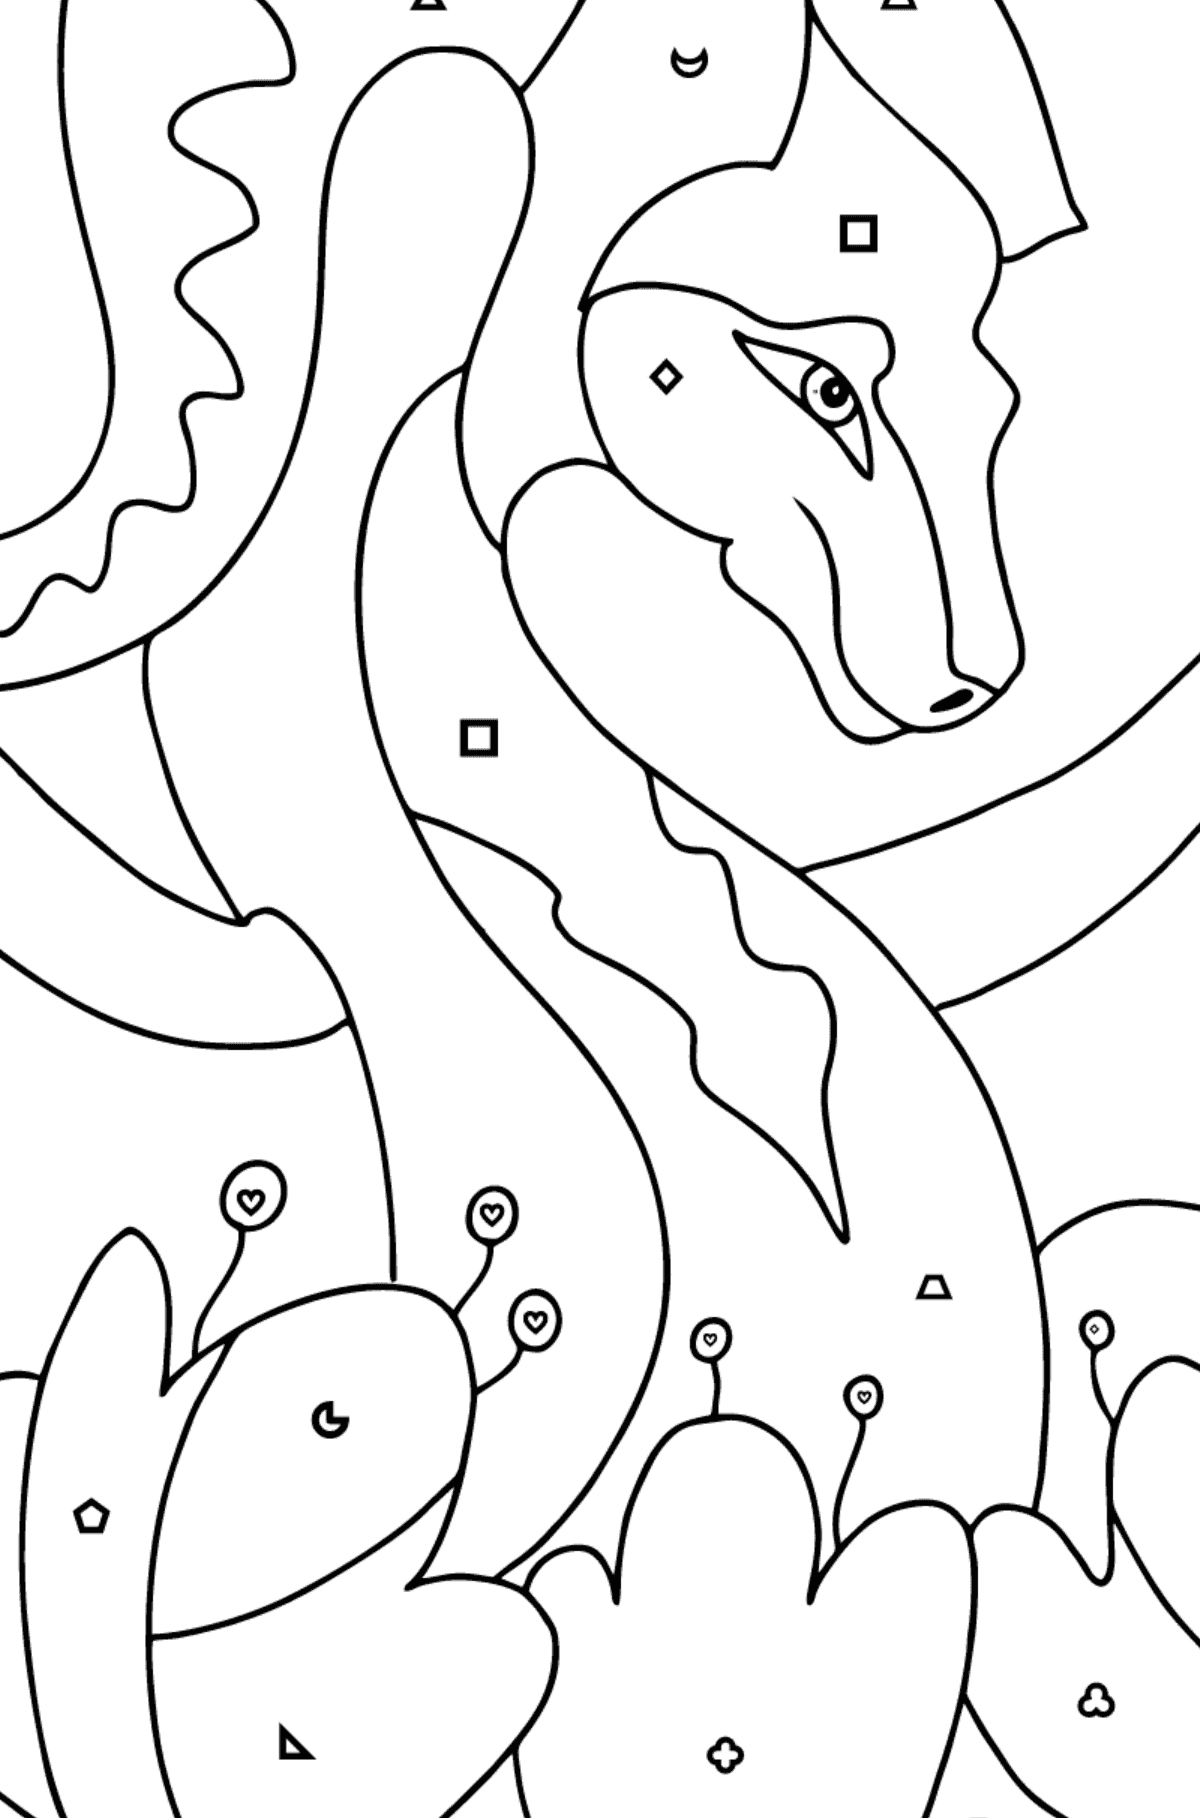 Coloriage Dragon coloré (difficile) - Coloriage par Formes Géométriques pour les Enfants